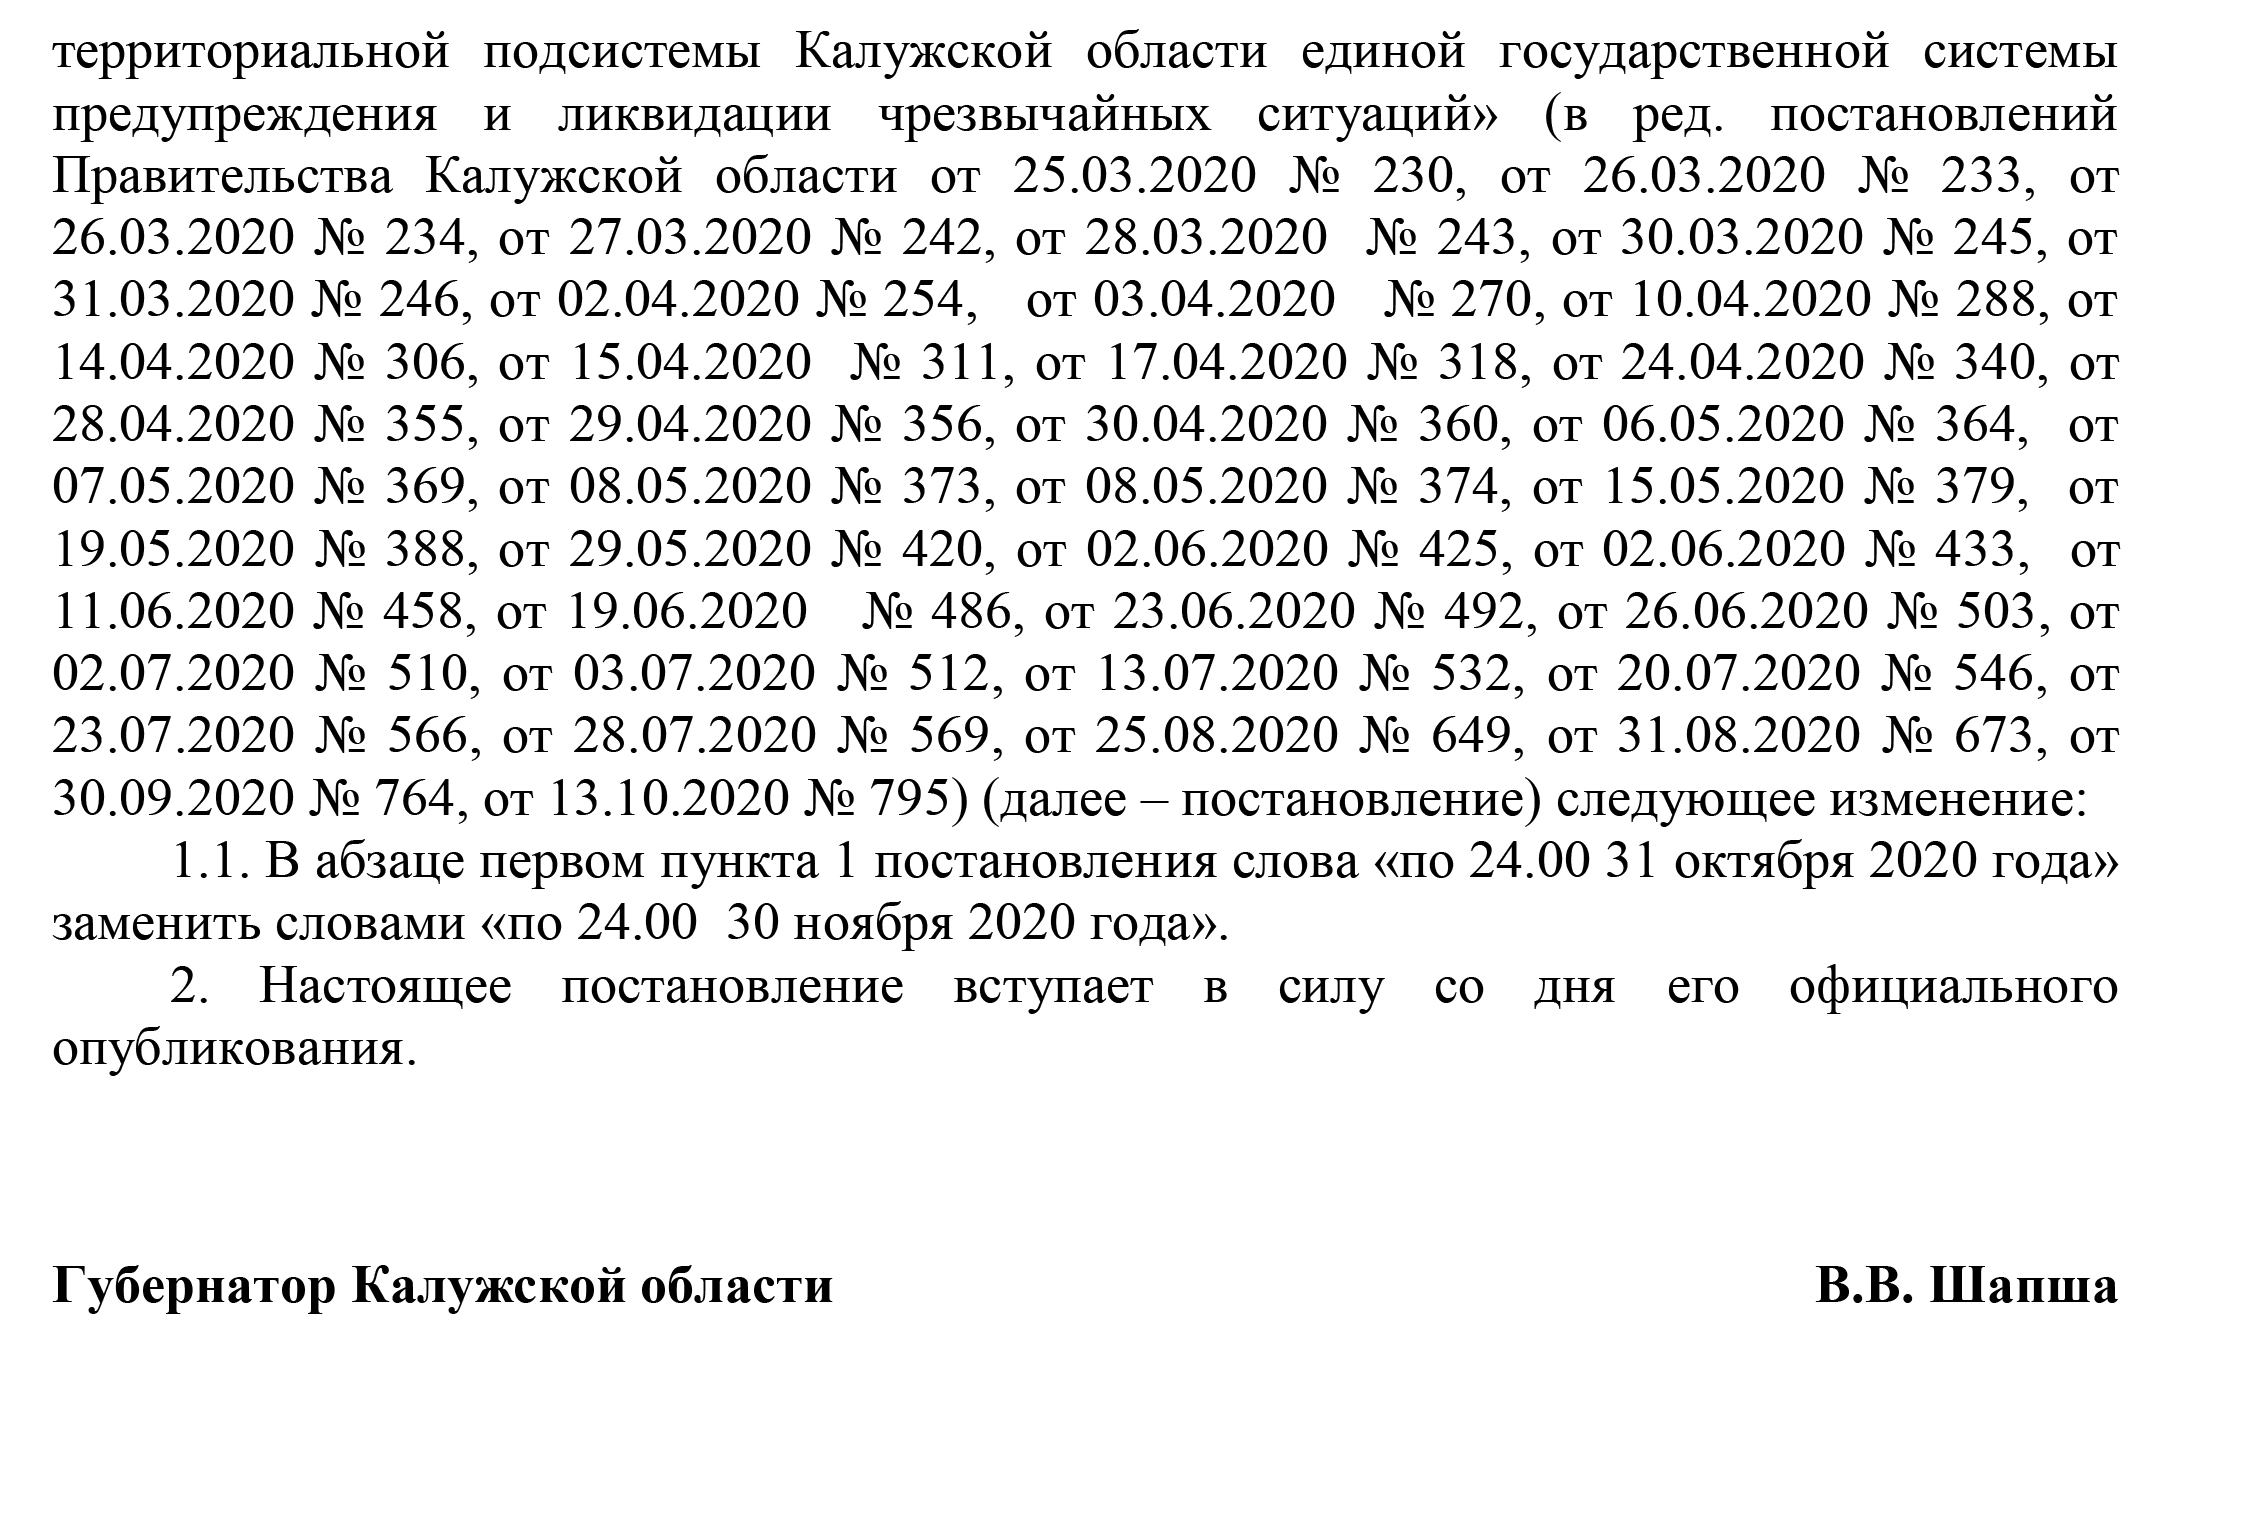 Полный текст постановления правительства Калужской области №828 от 29.10.2020: